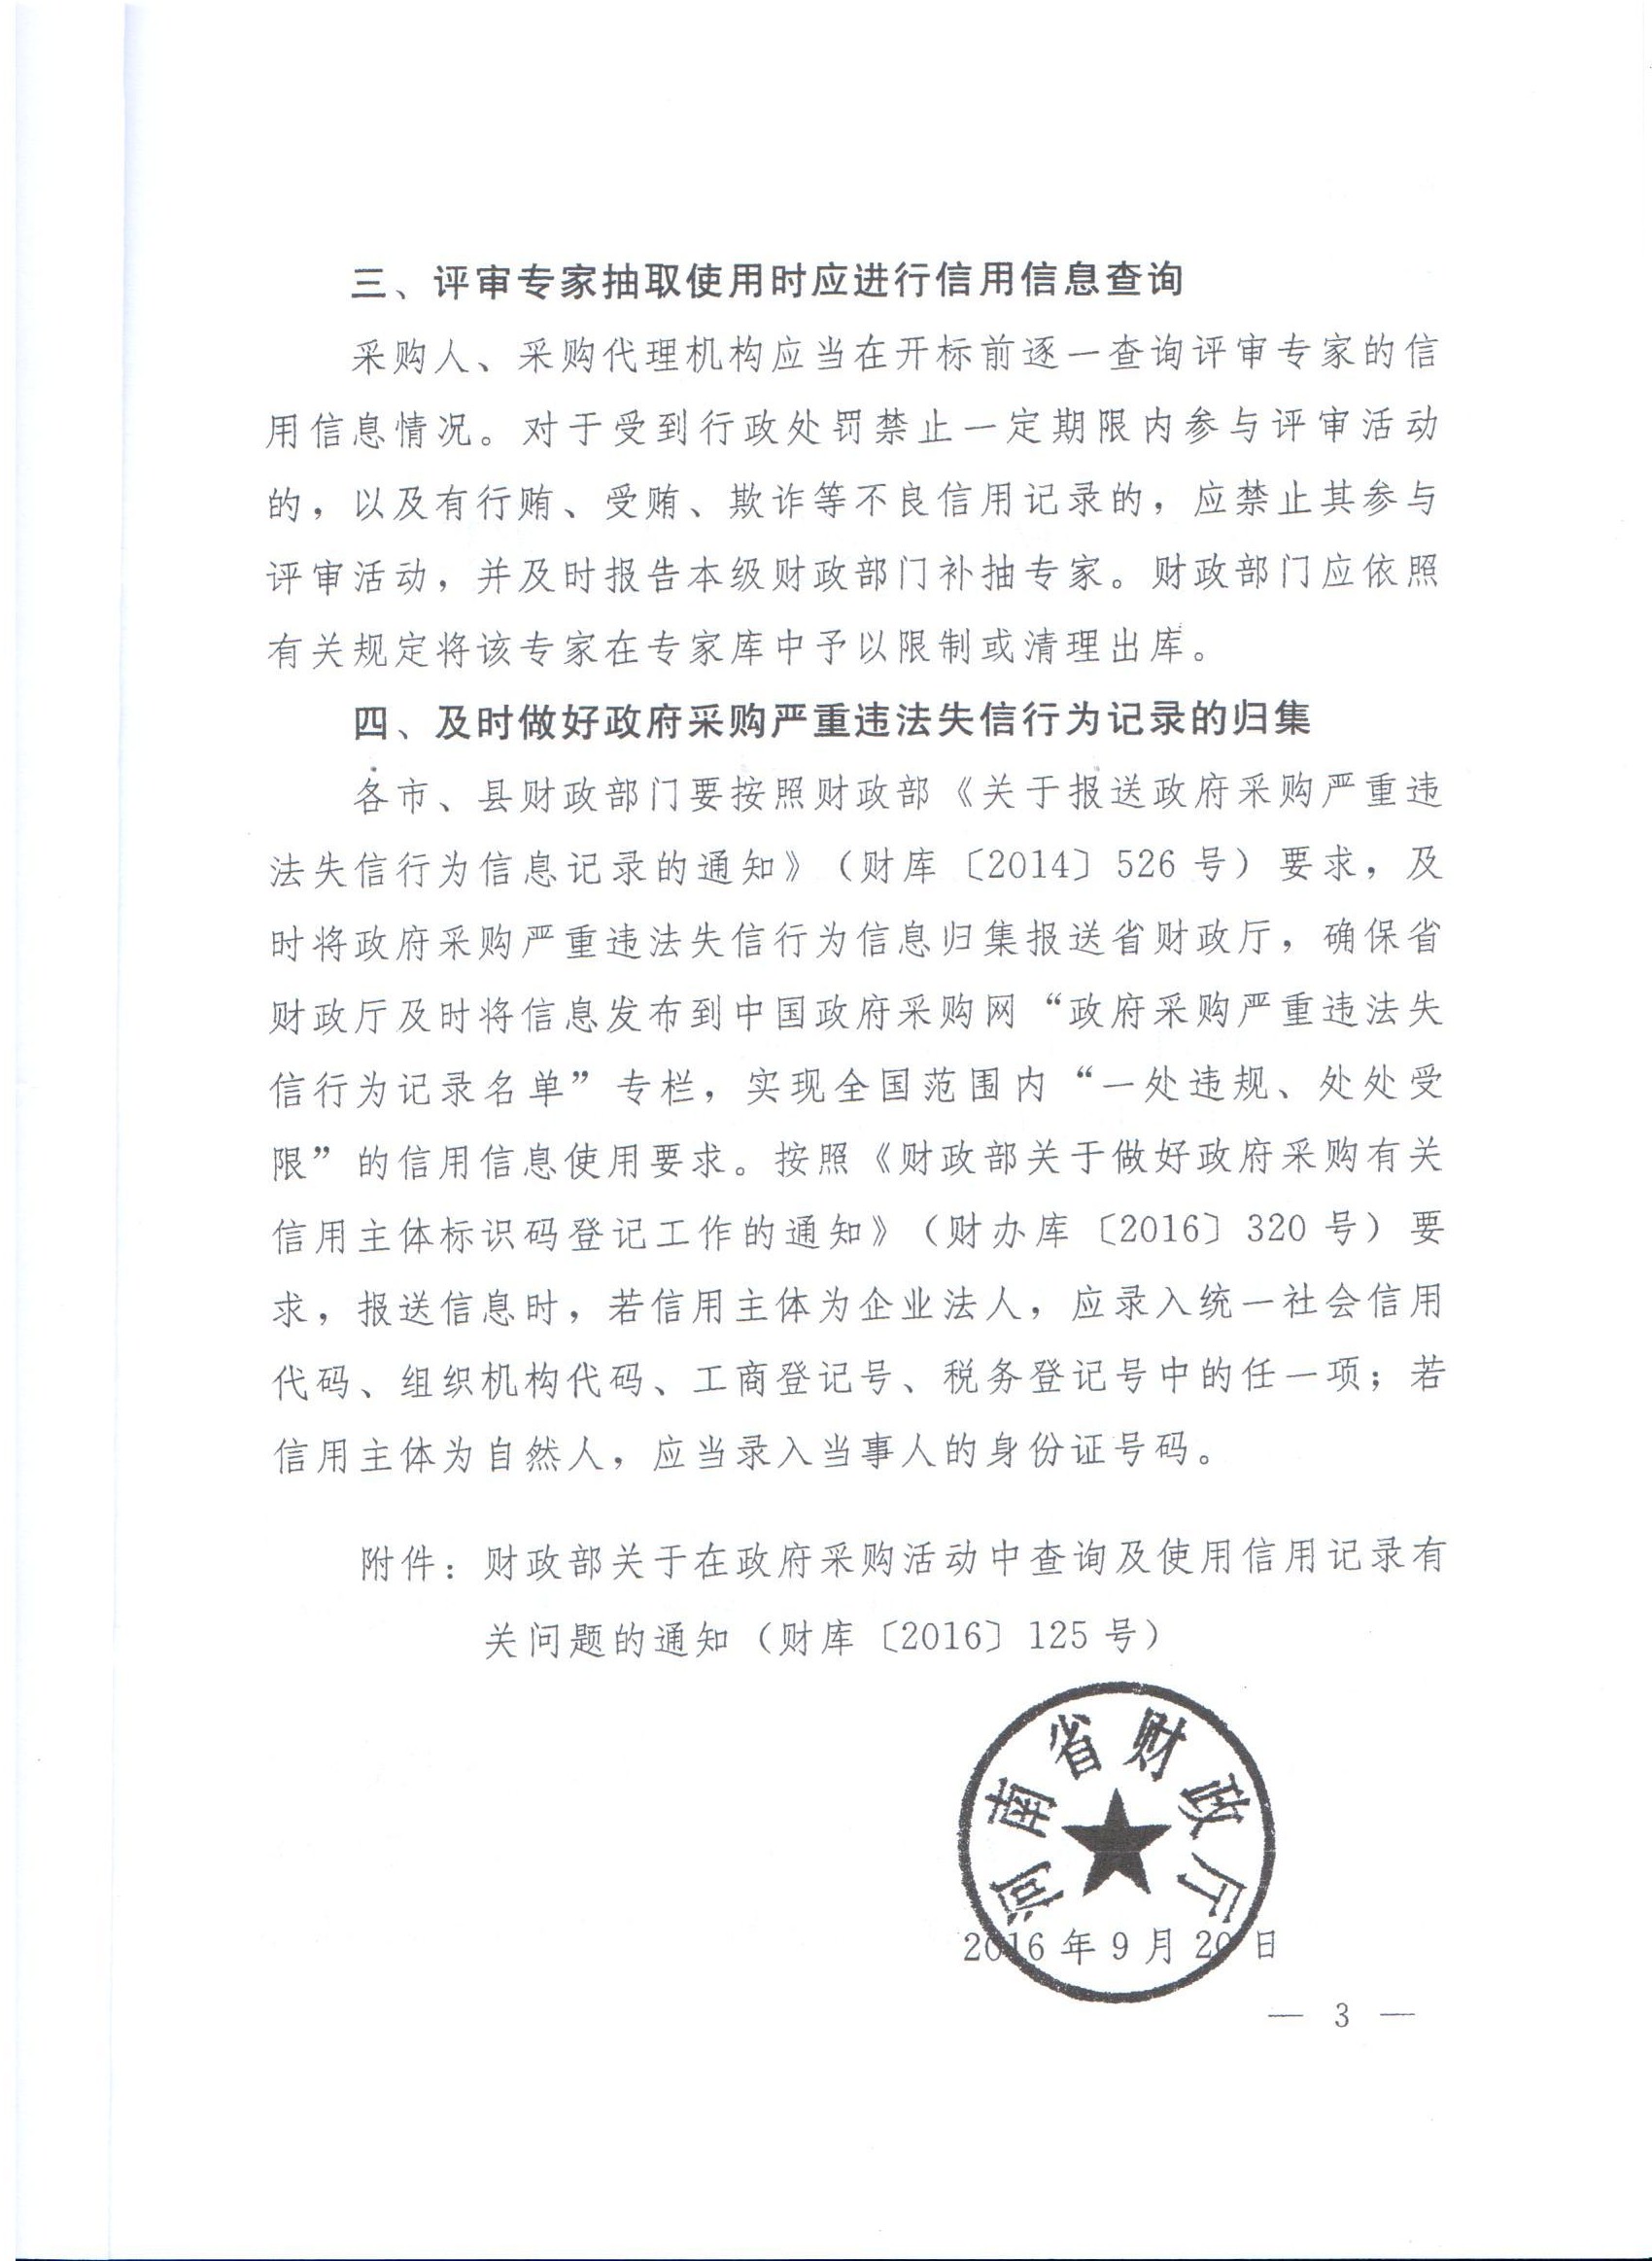 河南省财政厅转发财政部关于在政府采购活动中查询及使用信用记录有关问题的通知的通知(图3)